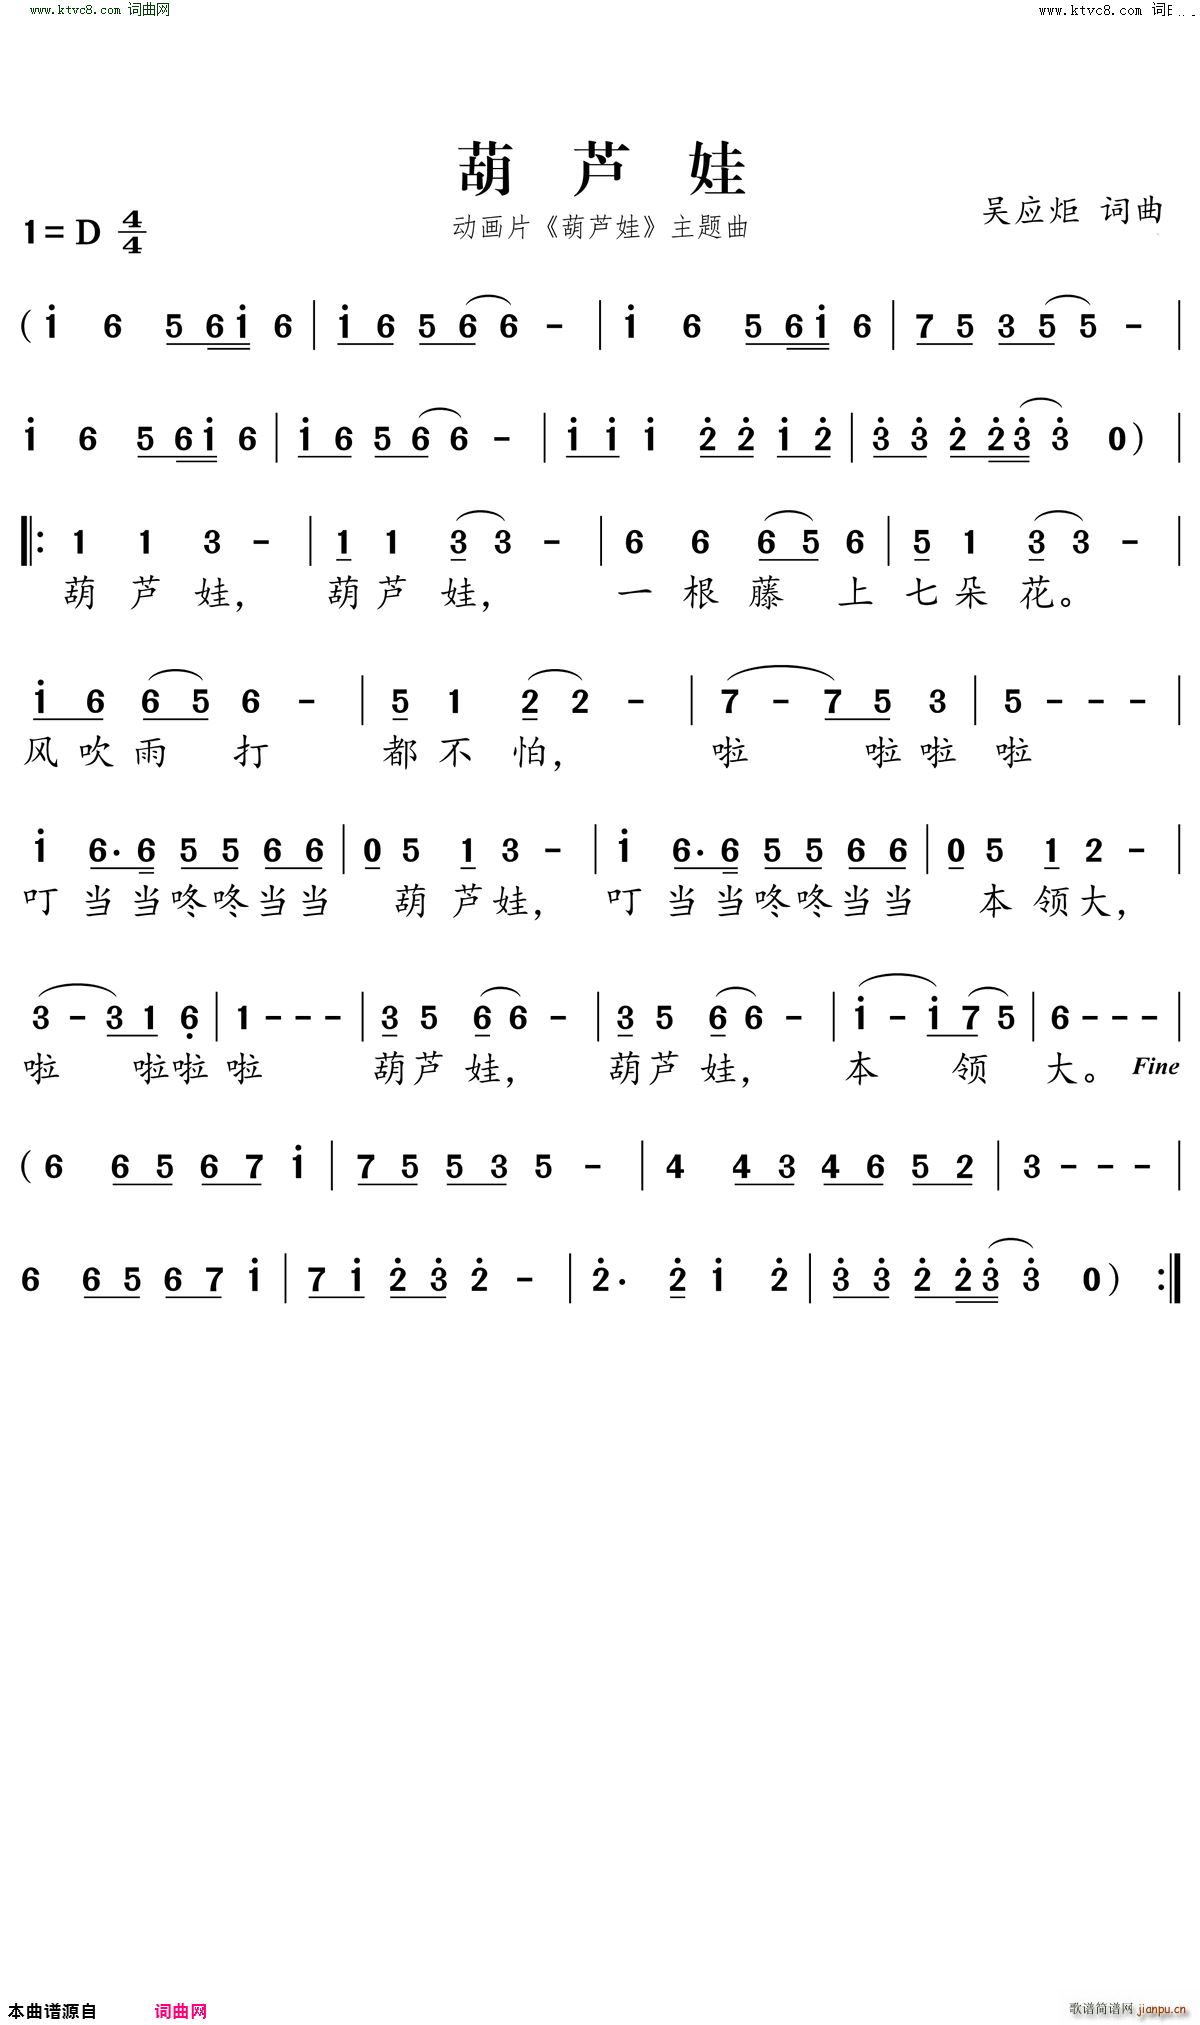 《葫芦娃》尤克里里儿童歌曲300首系列，弹唱指弹双谱合一版。 - 酷玩吉他